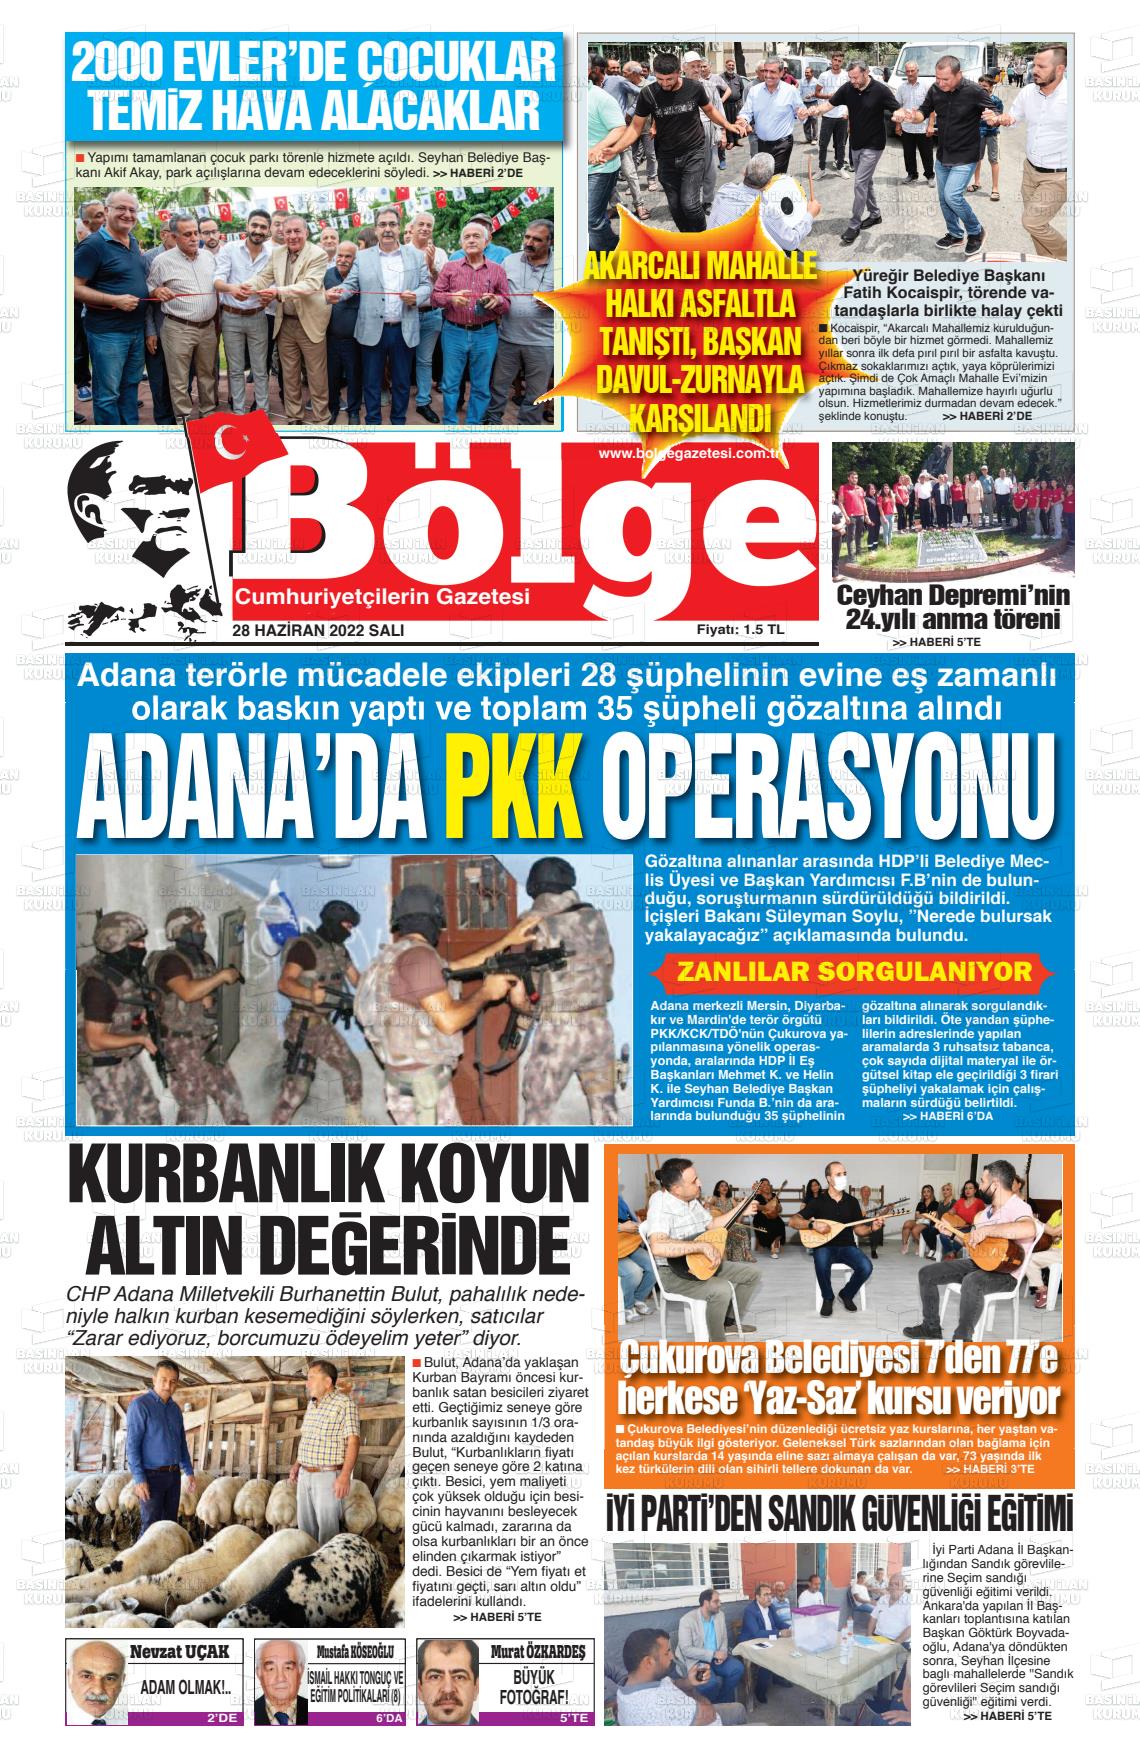 28 Haziran 2022 Adana Bölge Gazete Manşeti